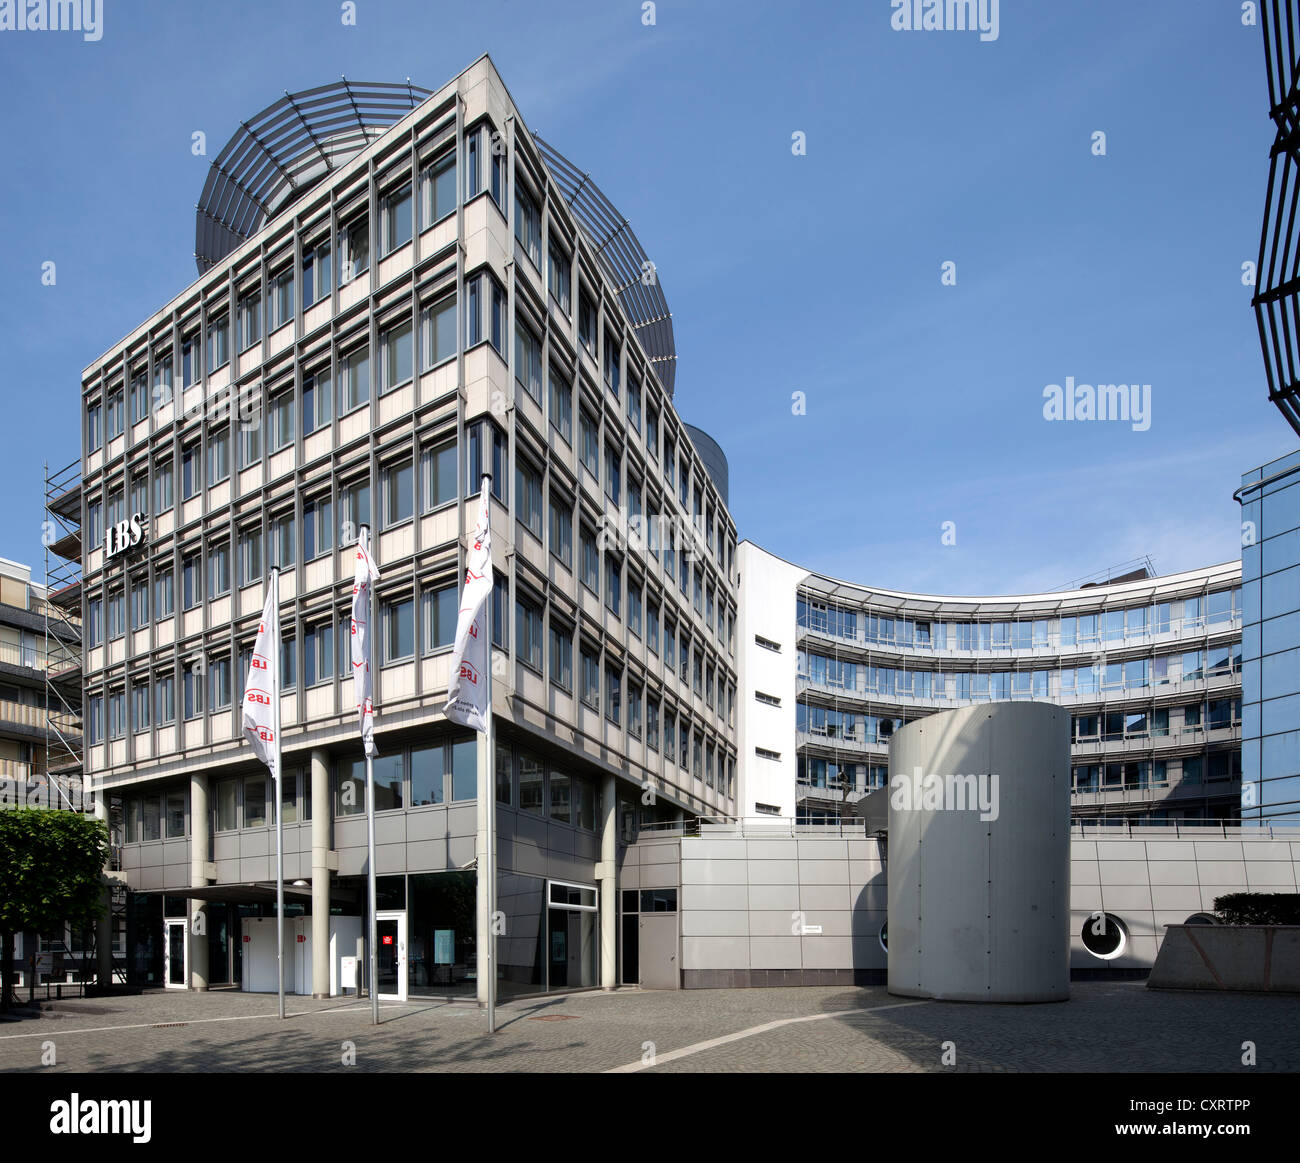 Immeuble de bureaux de l'Landesbausparkasse, LBS, Mayence, Rhénanie-Palatinat, Allemagne, Europe, PublicGround Banque D'Images